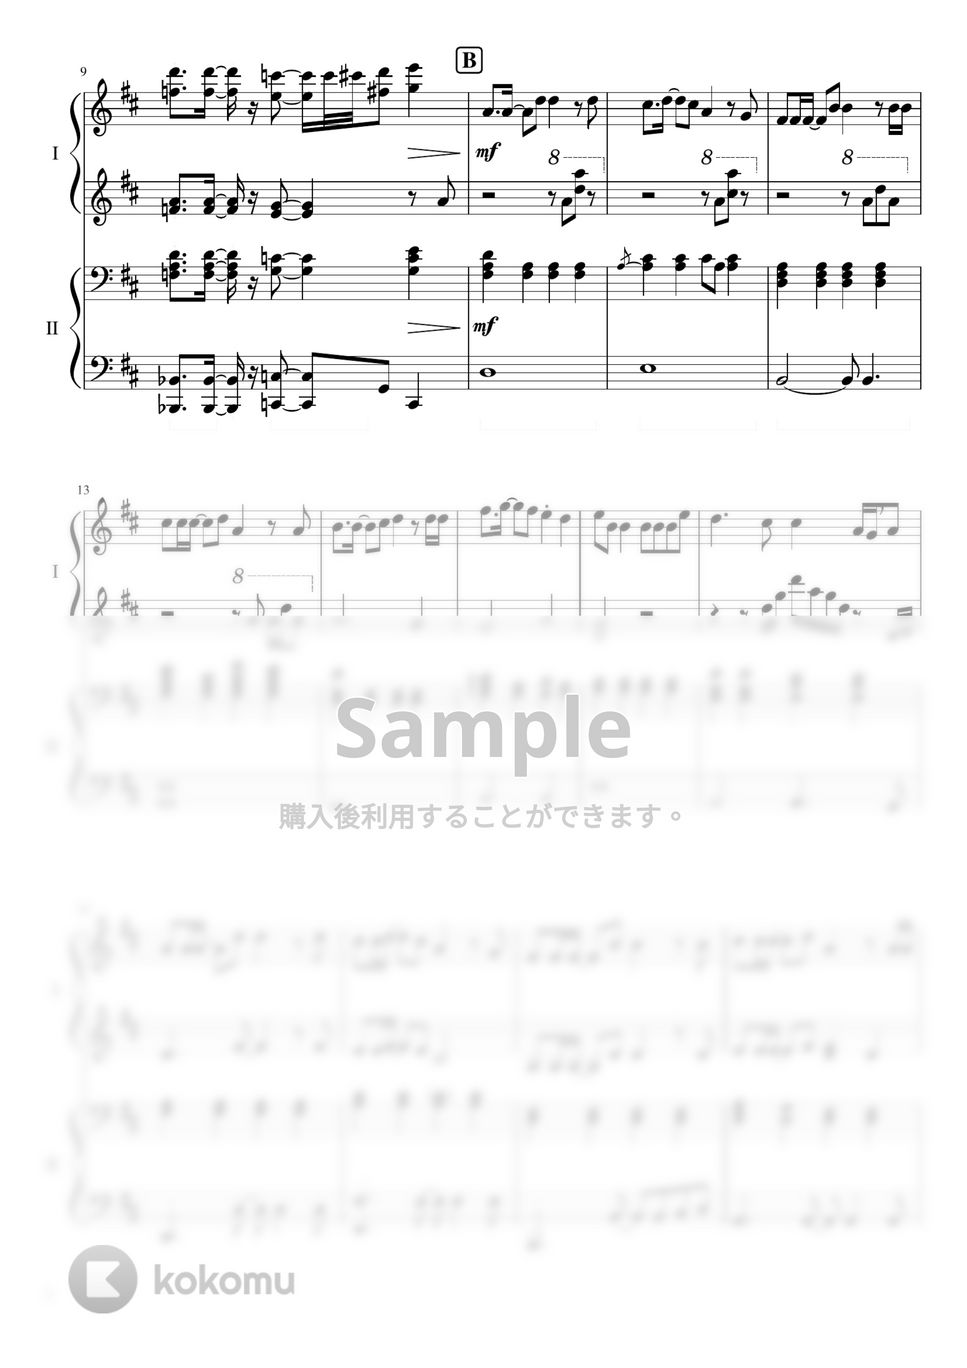 なにわ男子 - ハッピーサプライズ (なにわ男子/『ハッピーサプライズ』連弾) by ピアノぷりん